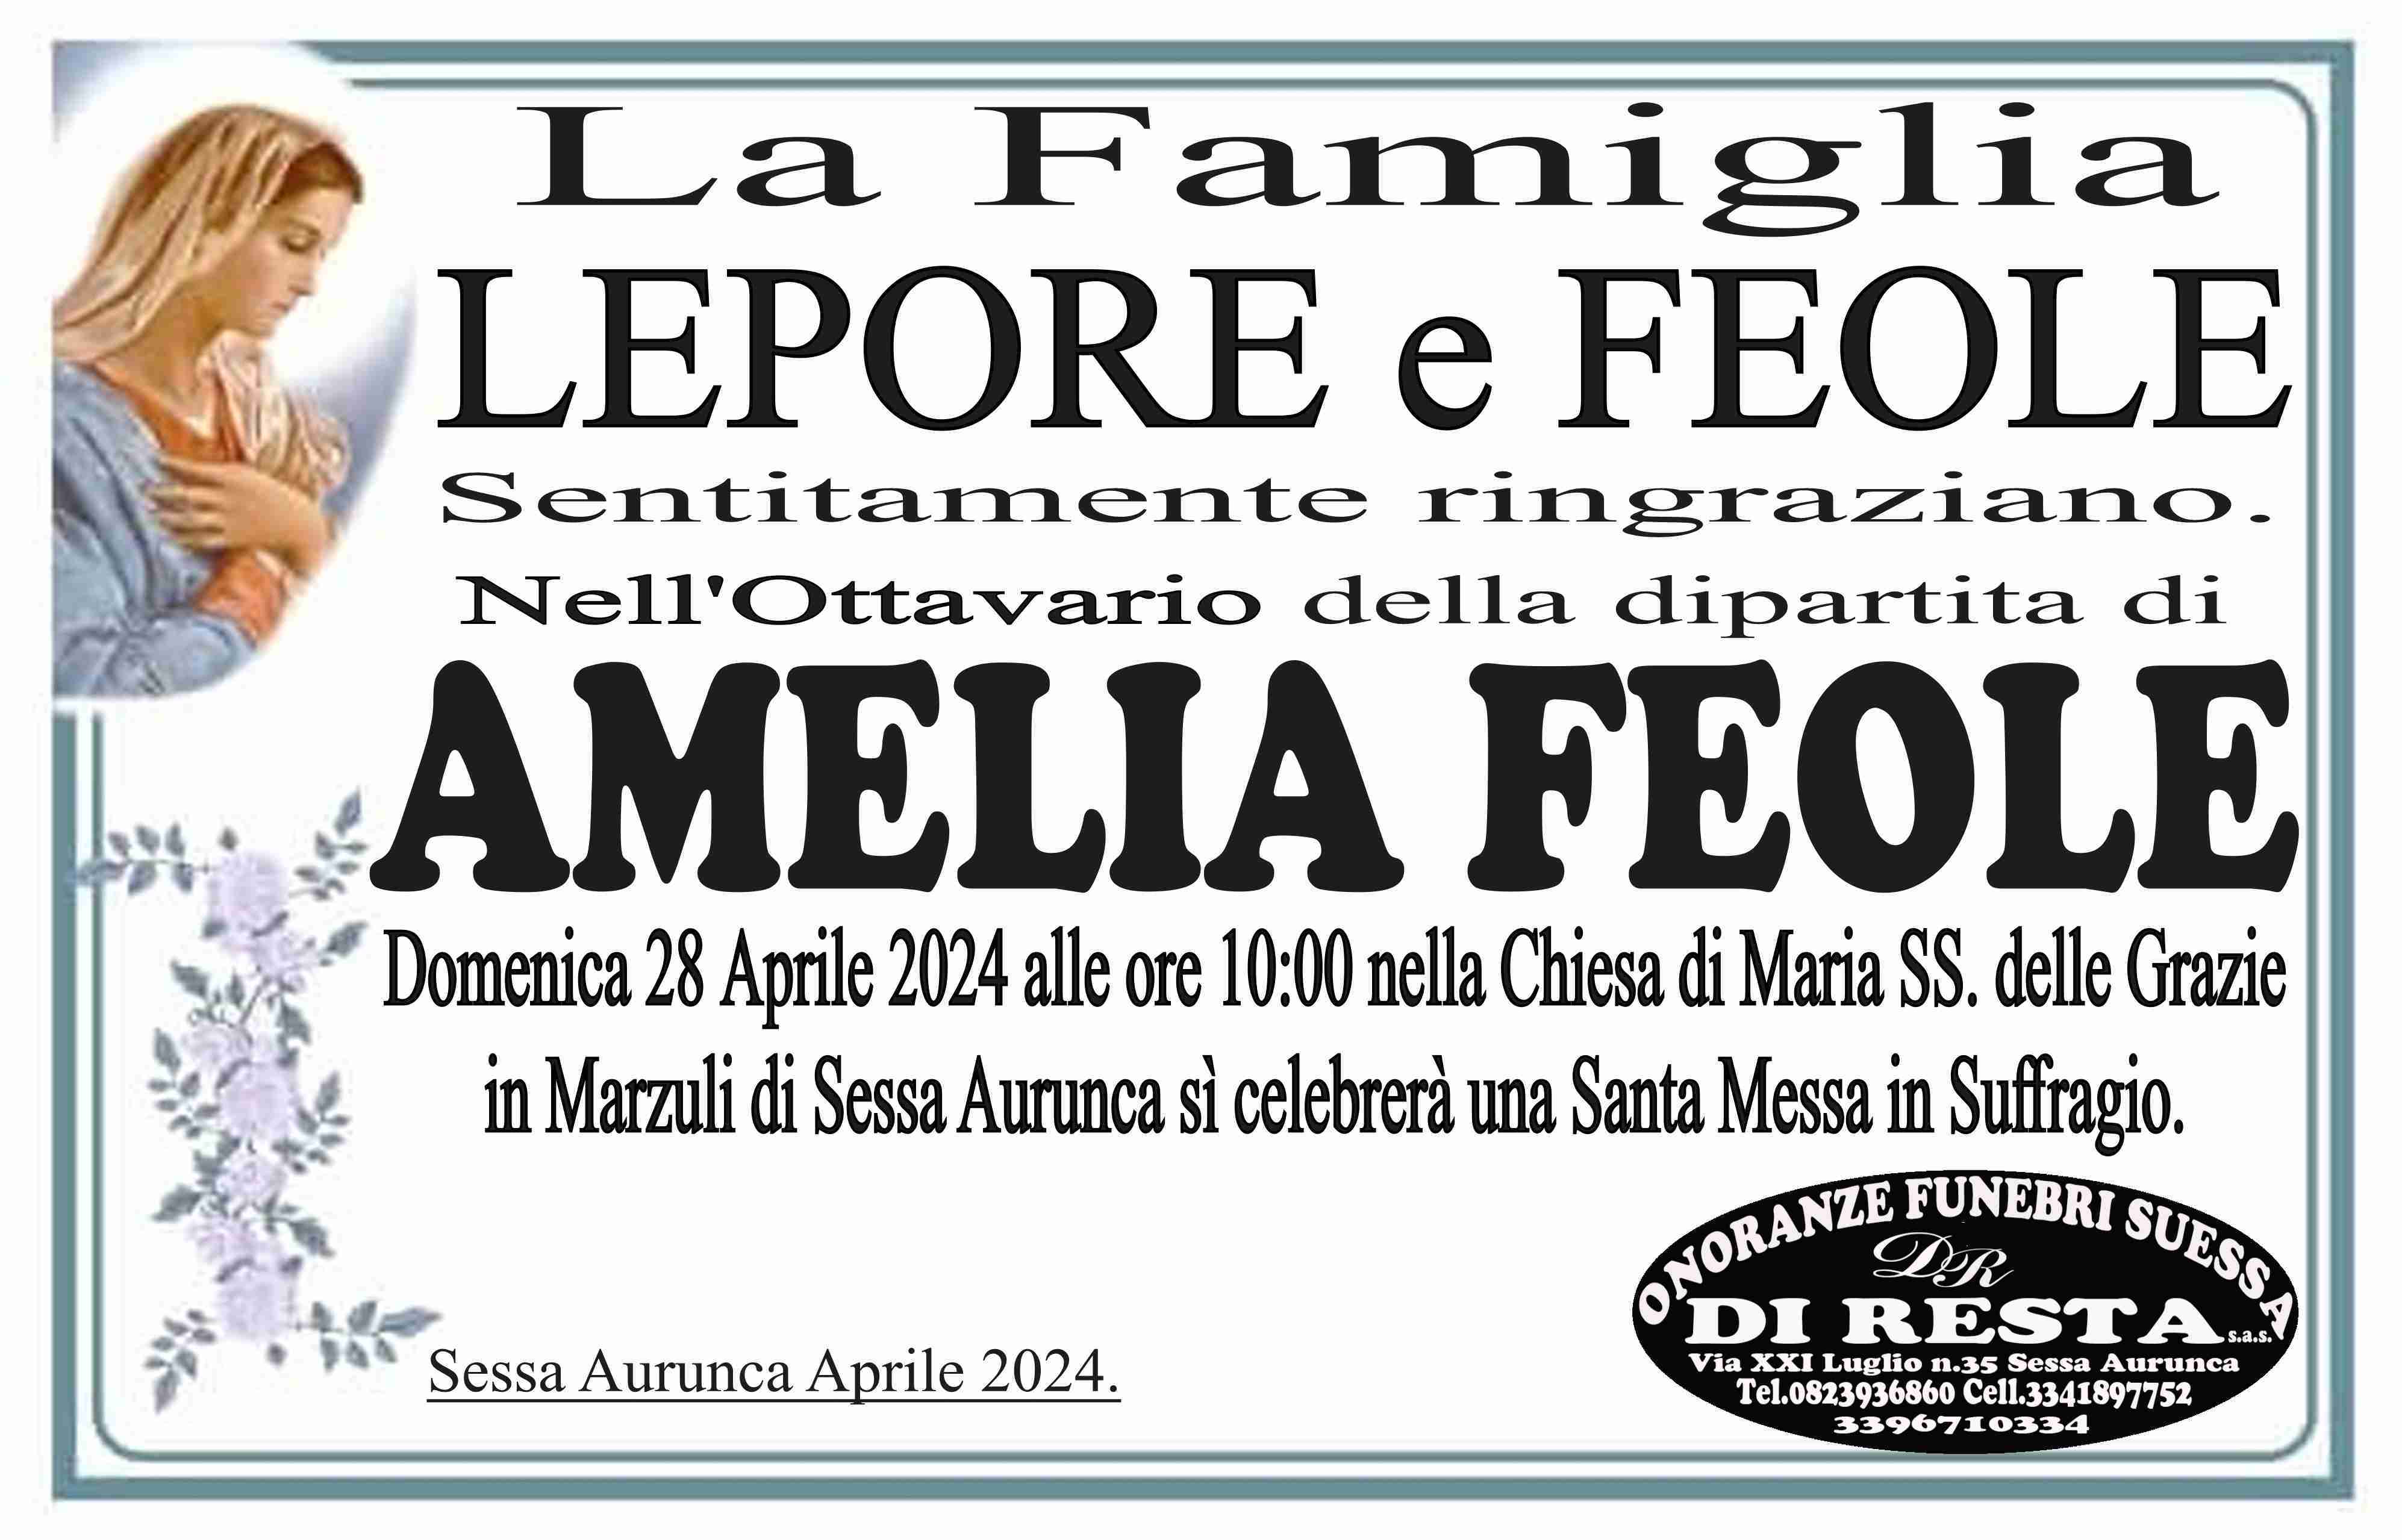 Amelia Feole